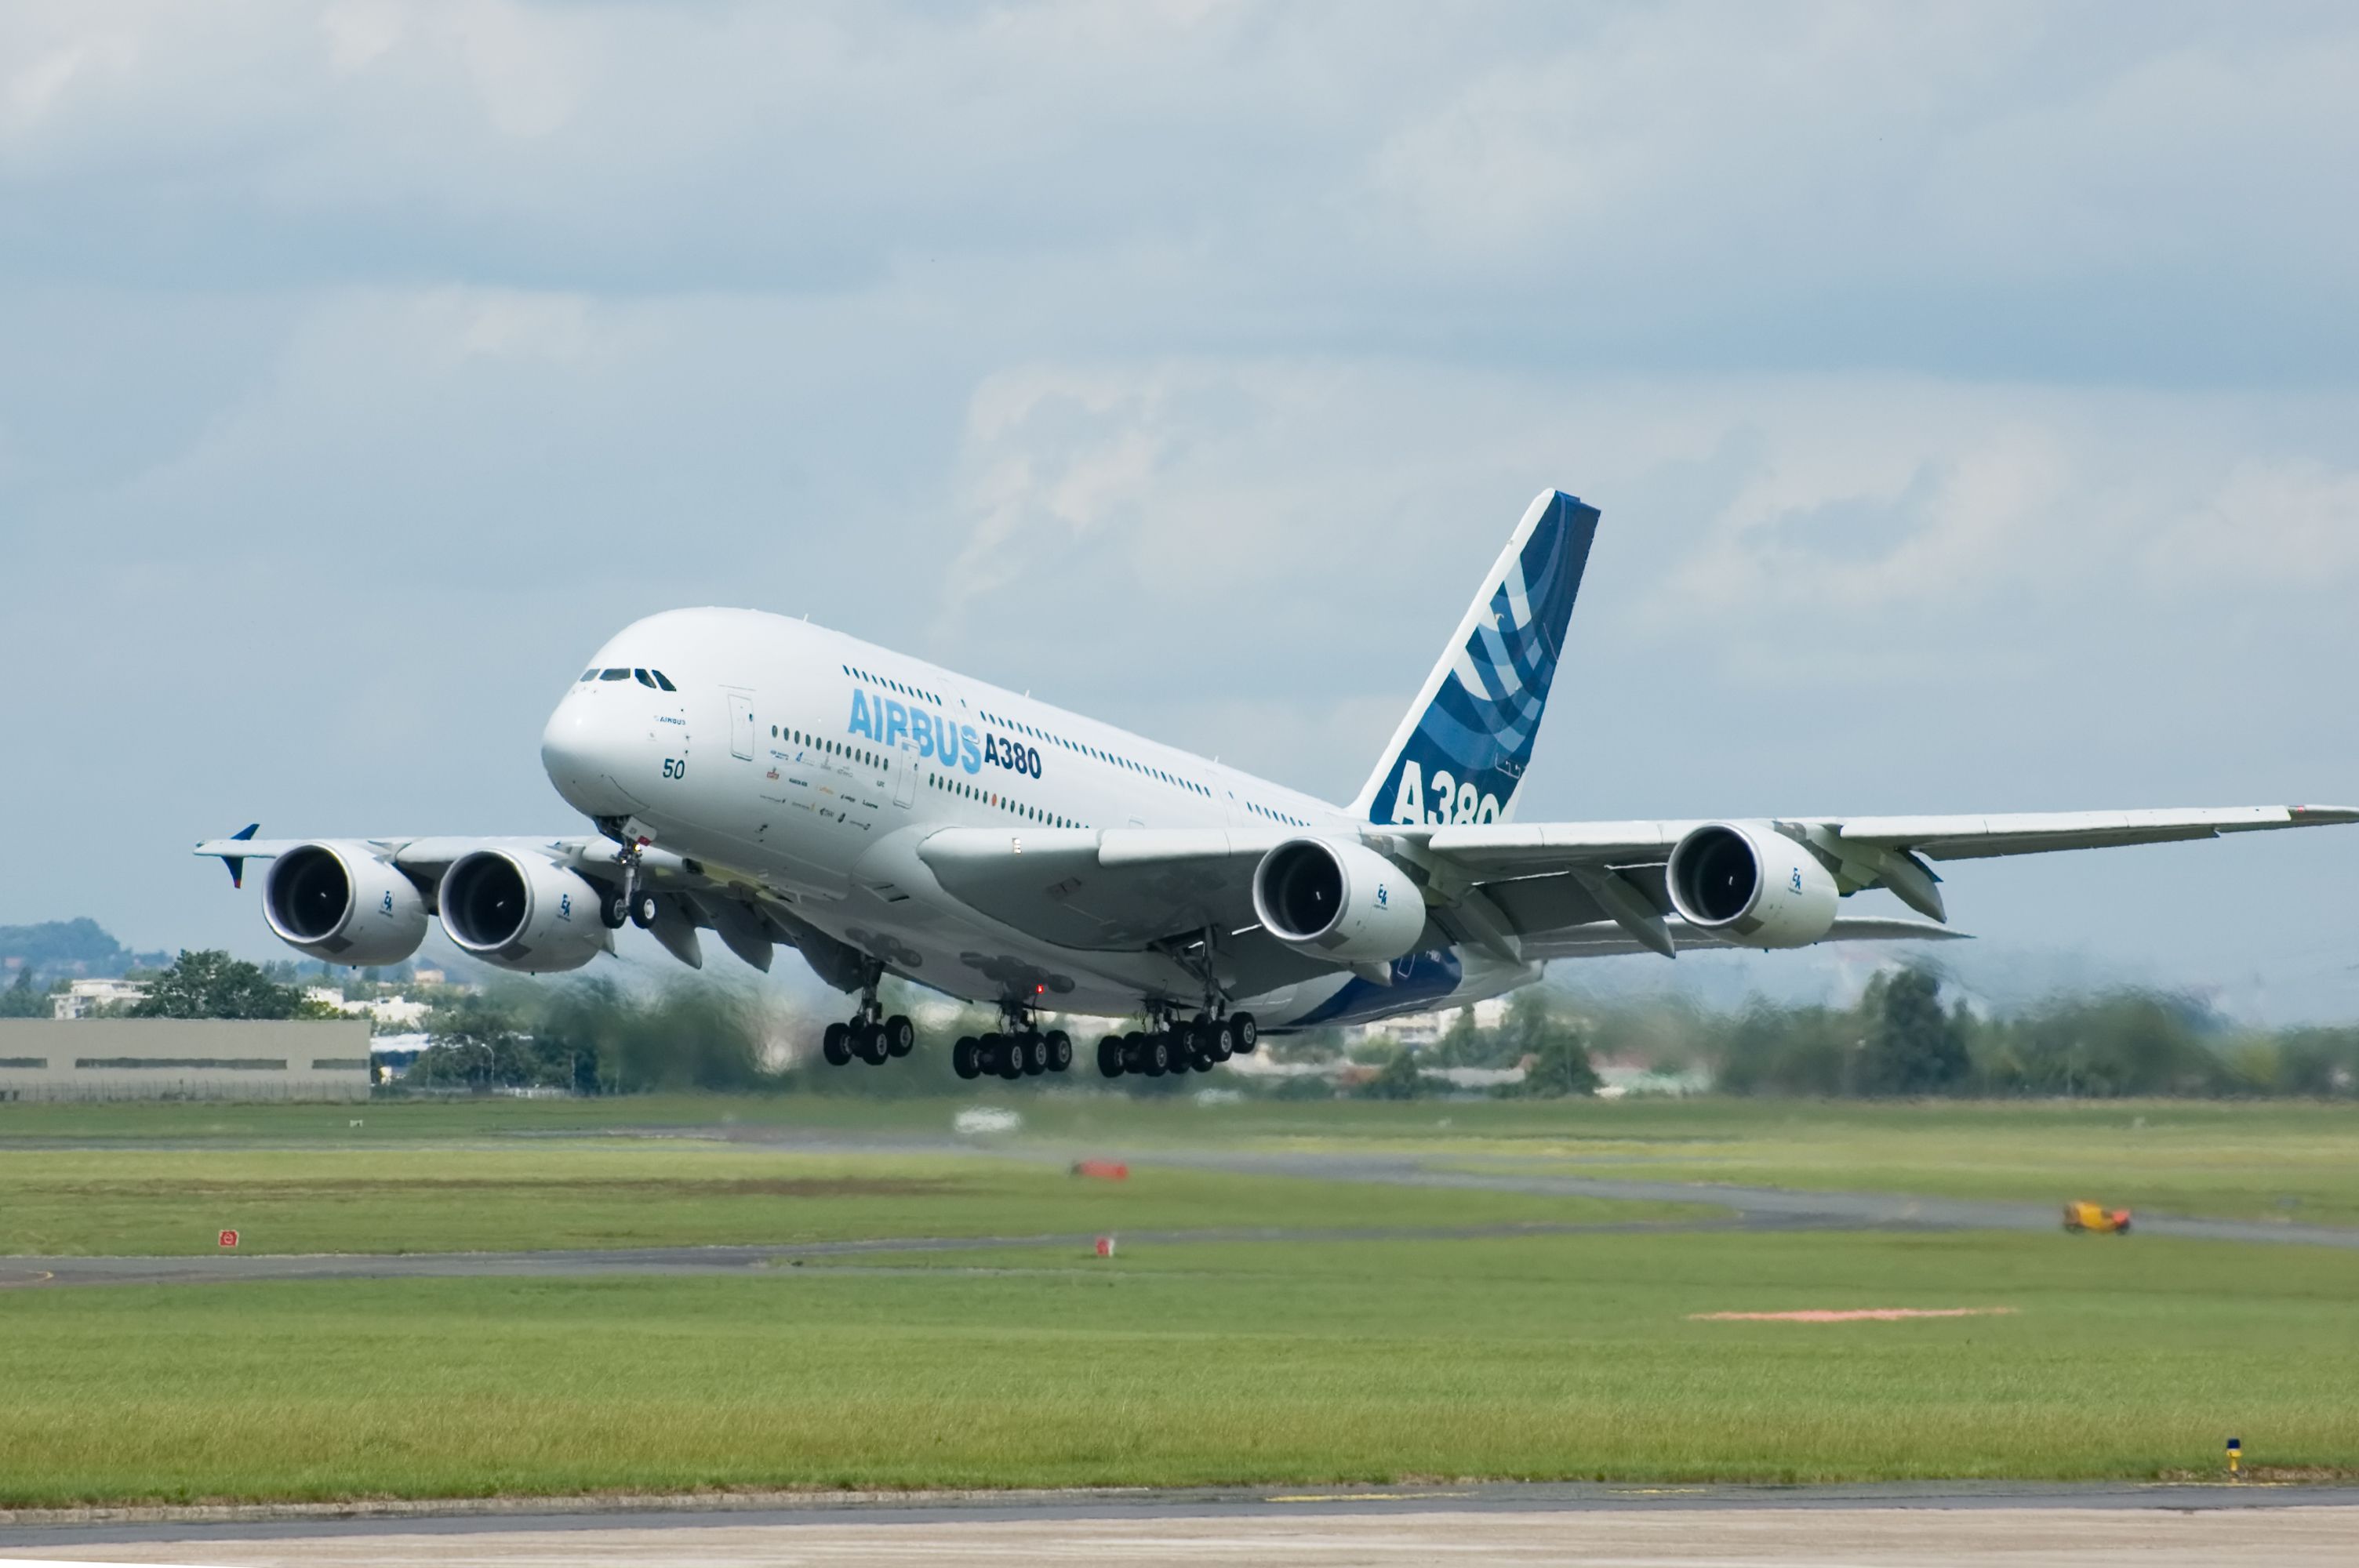 Airbus A380 landing